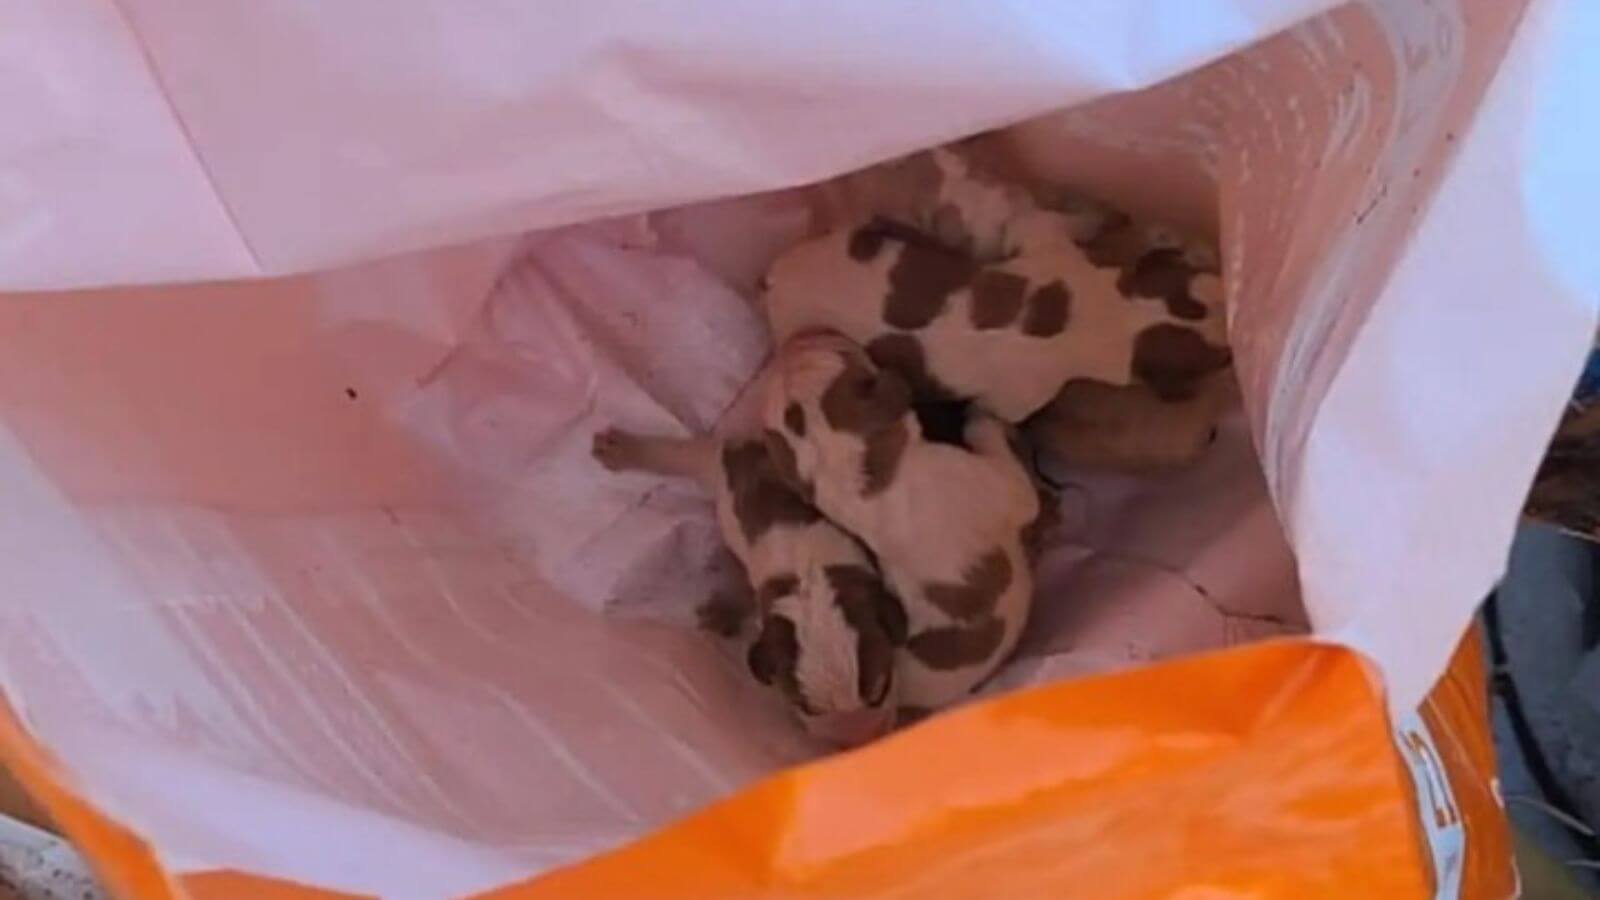 Filhotes de cachorro recém-nascidos encontrados em saco plástico laranja, abandonados em meio a entulhos